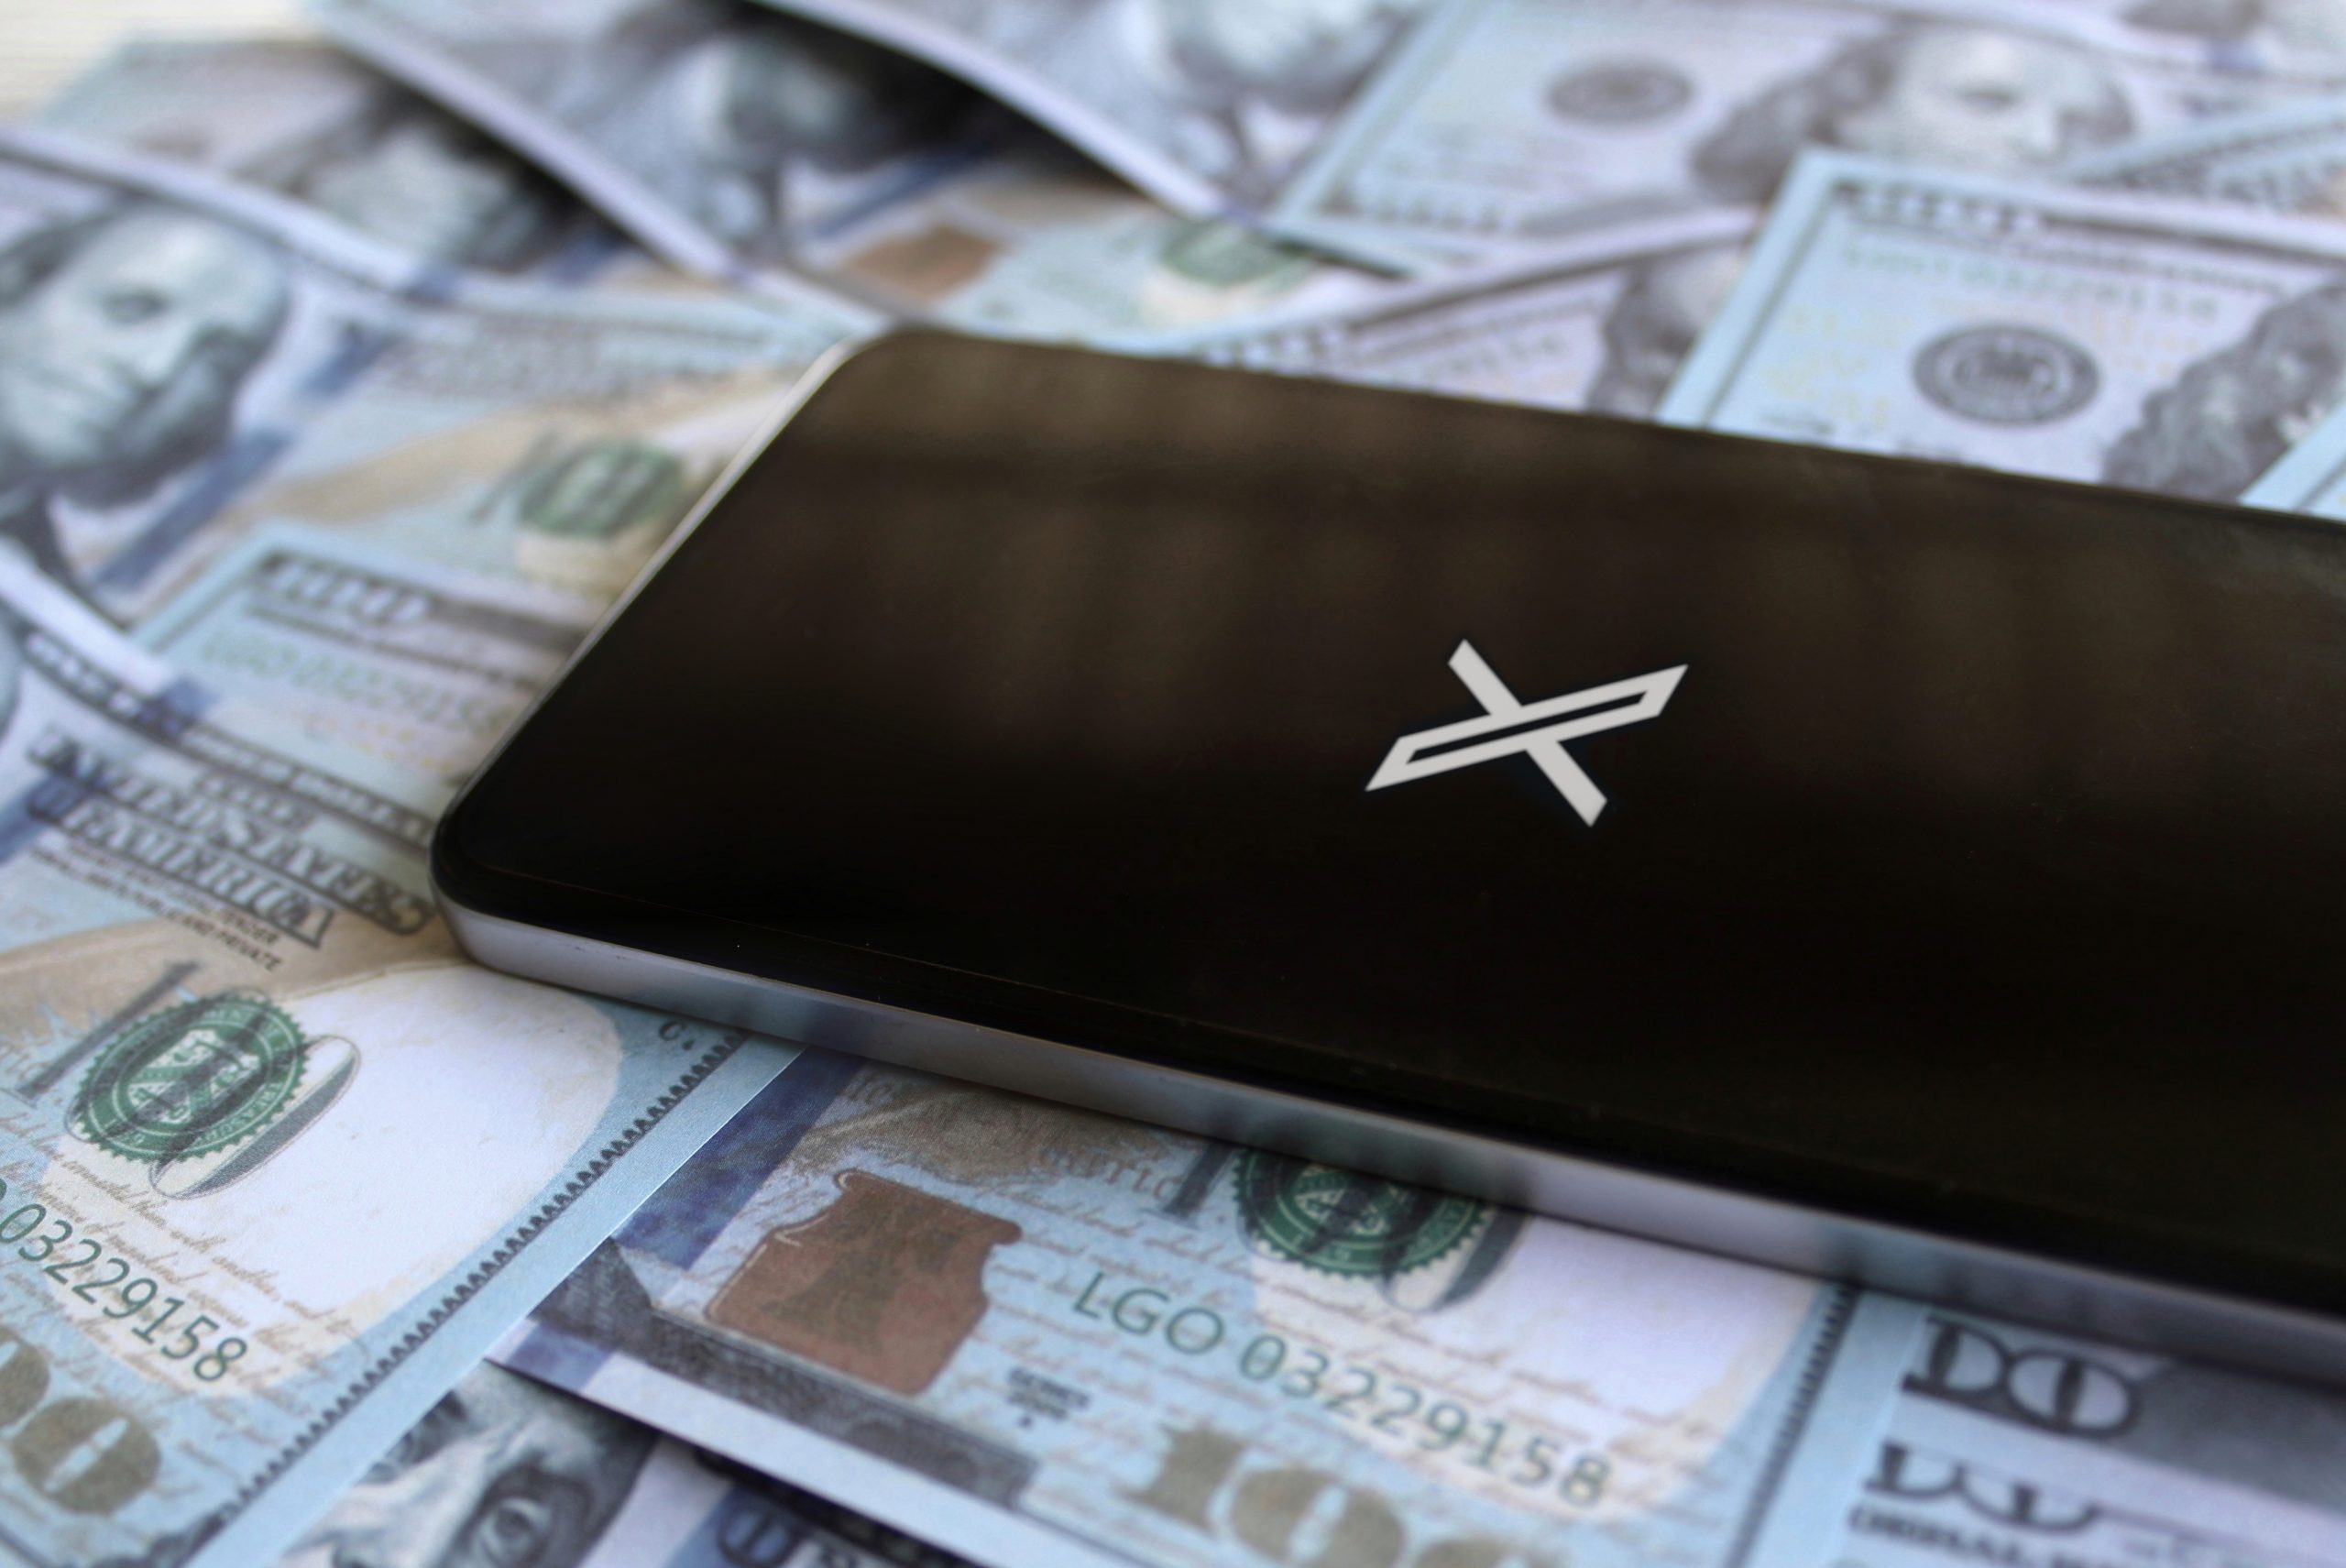 Imagem mostra o X em um smartphone em meio a várias notas de dólares americanos